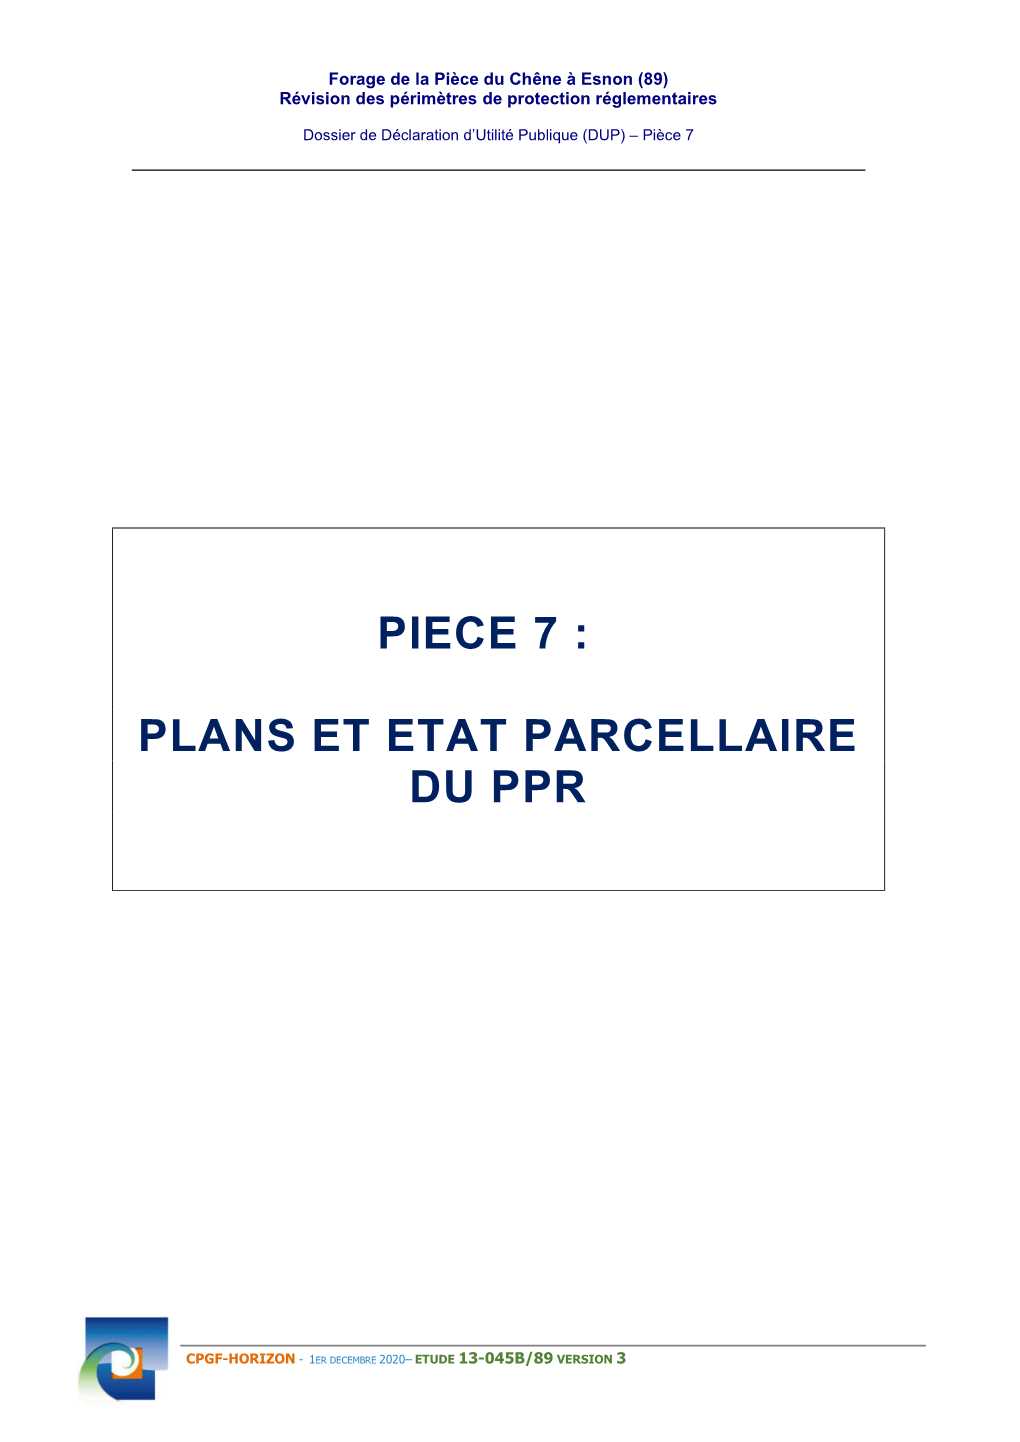 Piece 7 : Plans Et Etat Parcellaire Du